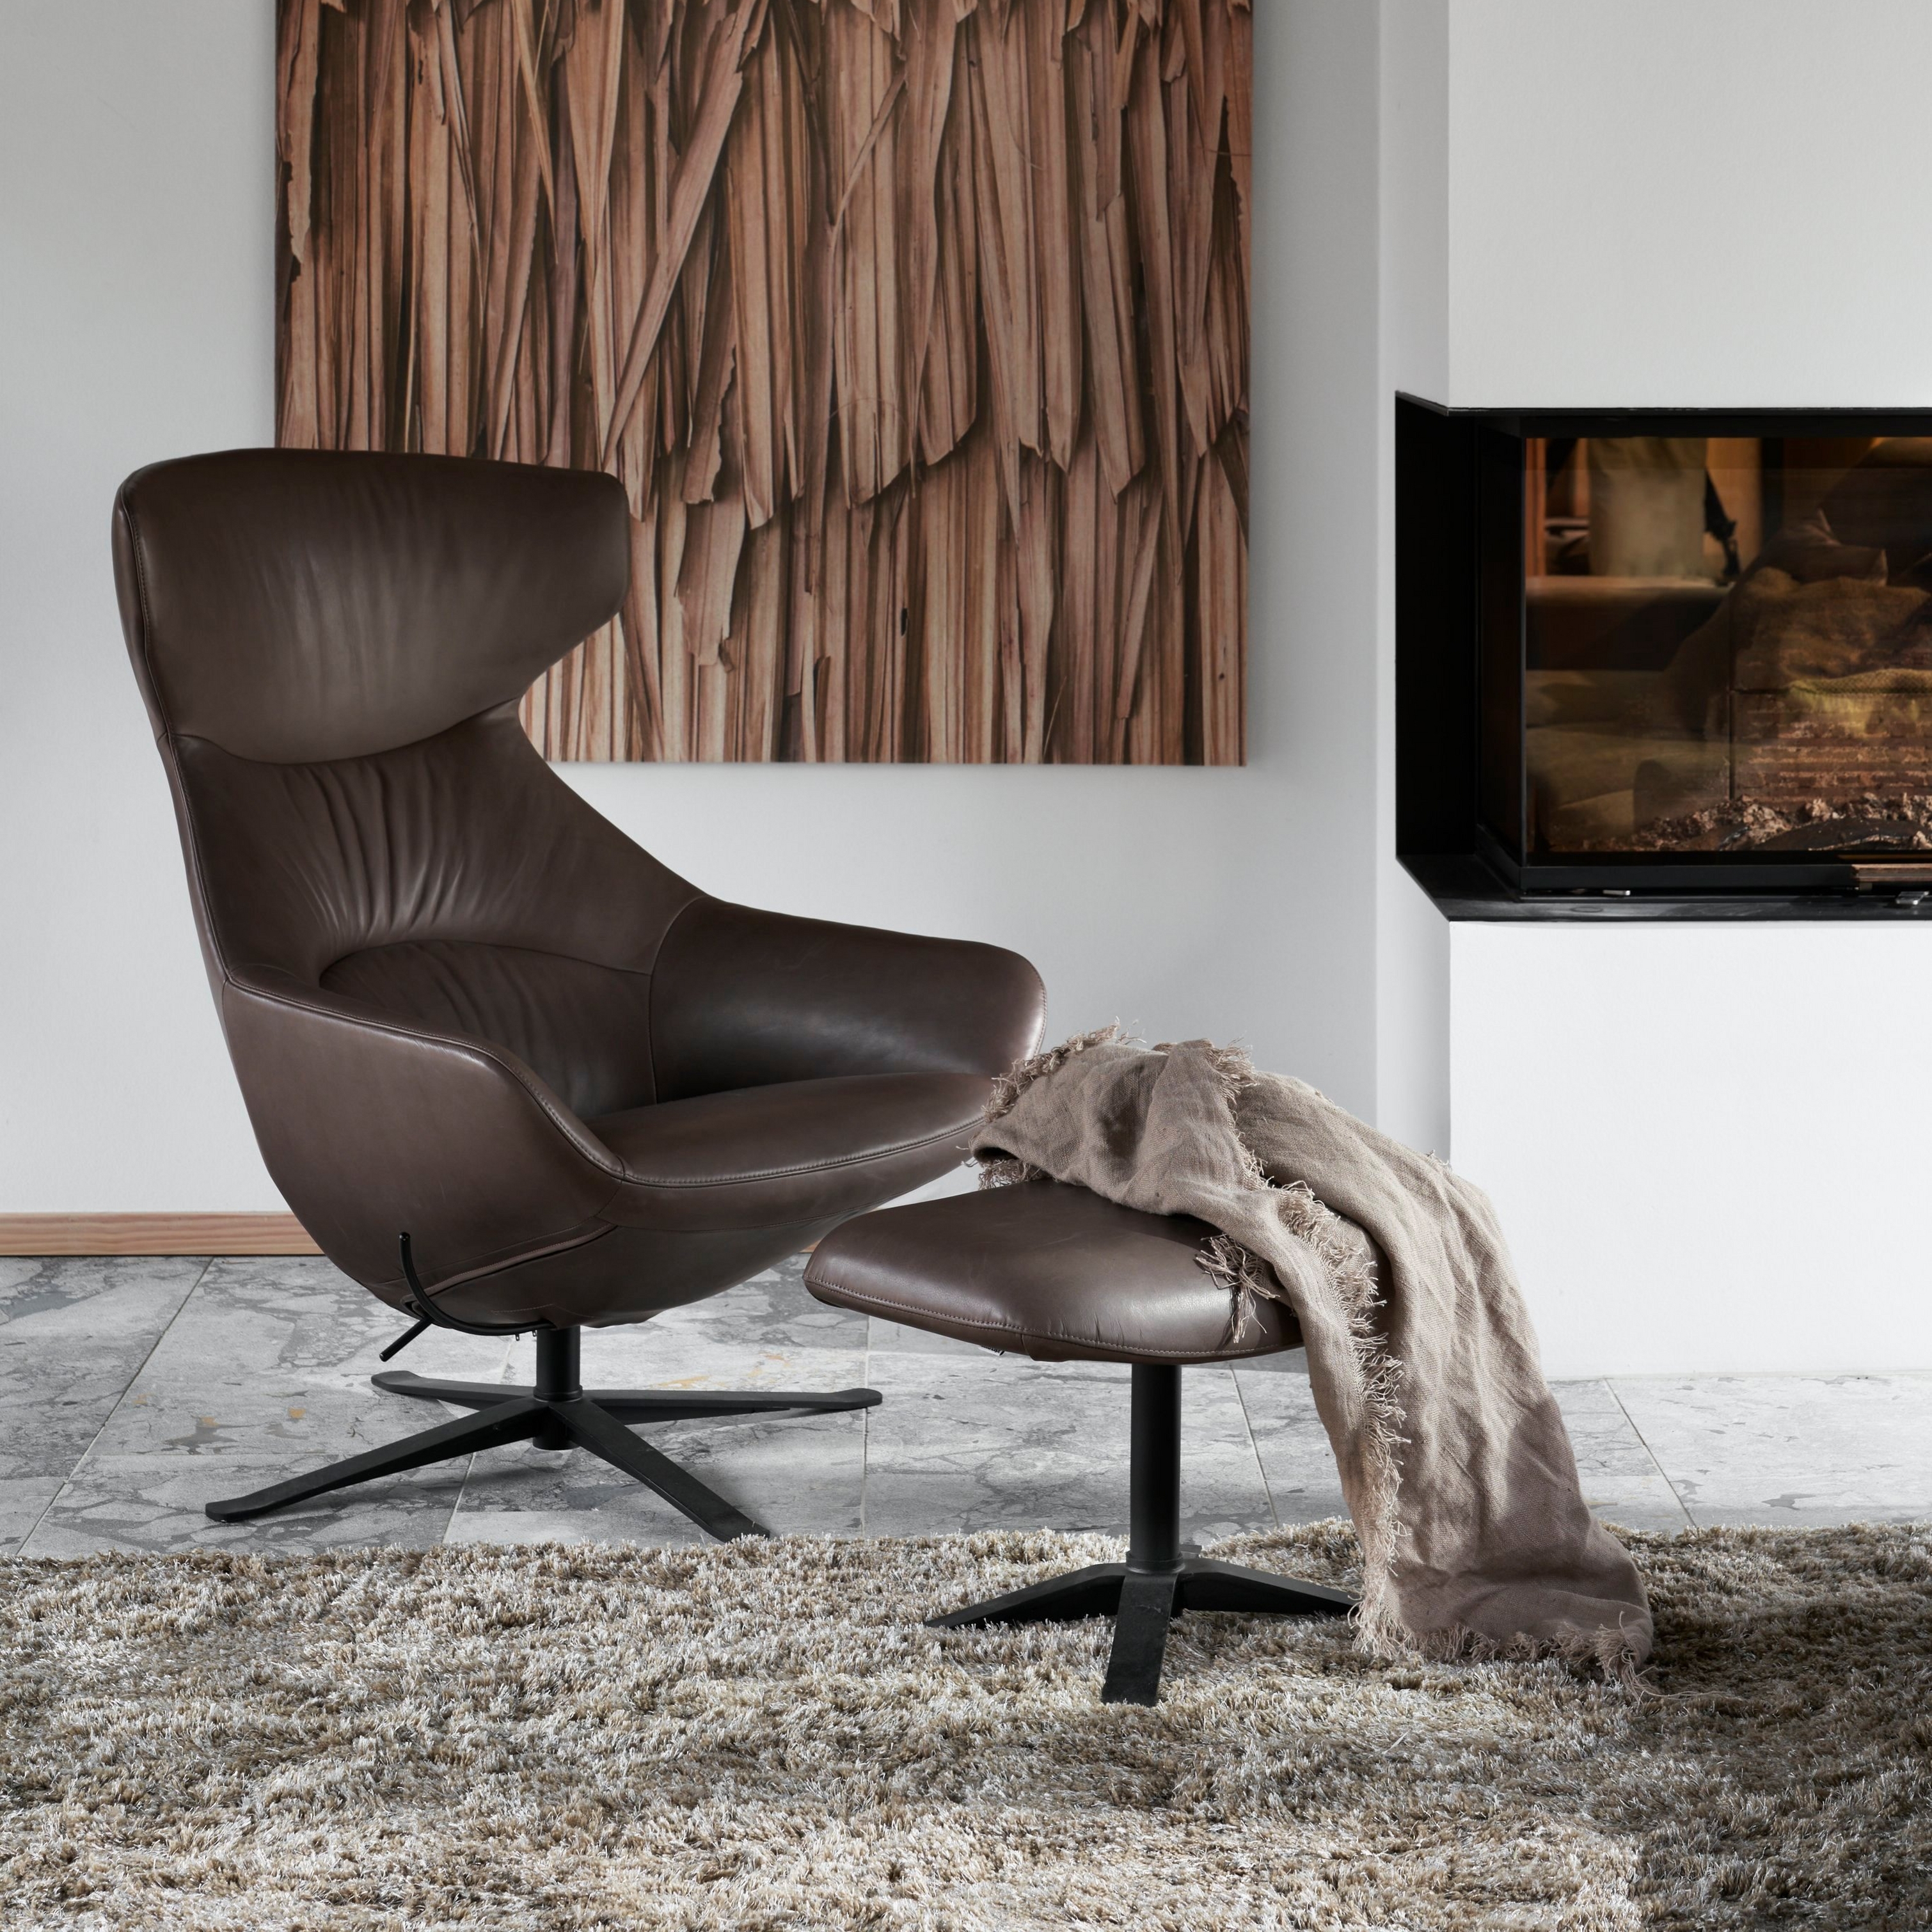 Moderne stoel van bruin leder met voetenbank, shag karpet, houten kunst en haard.